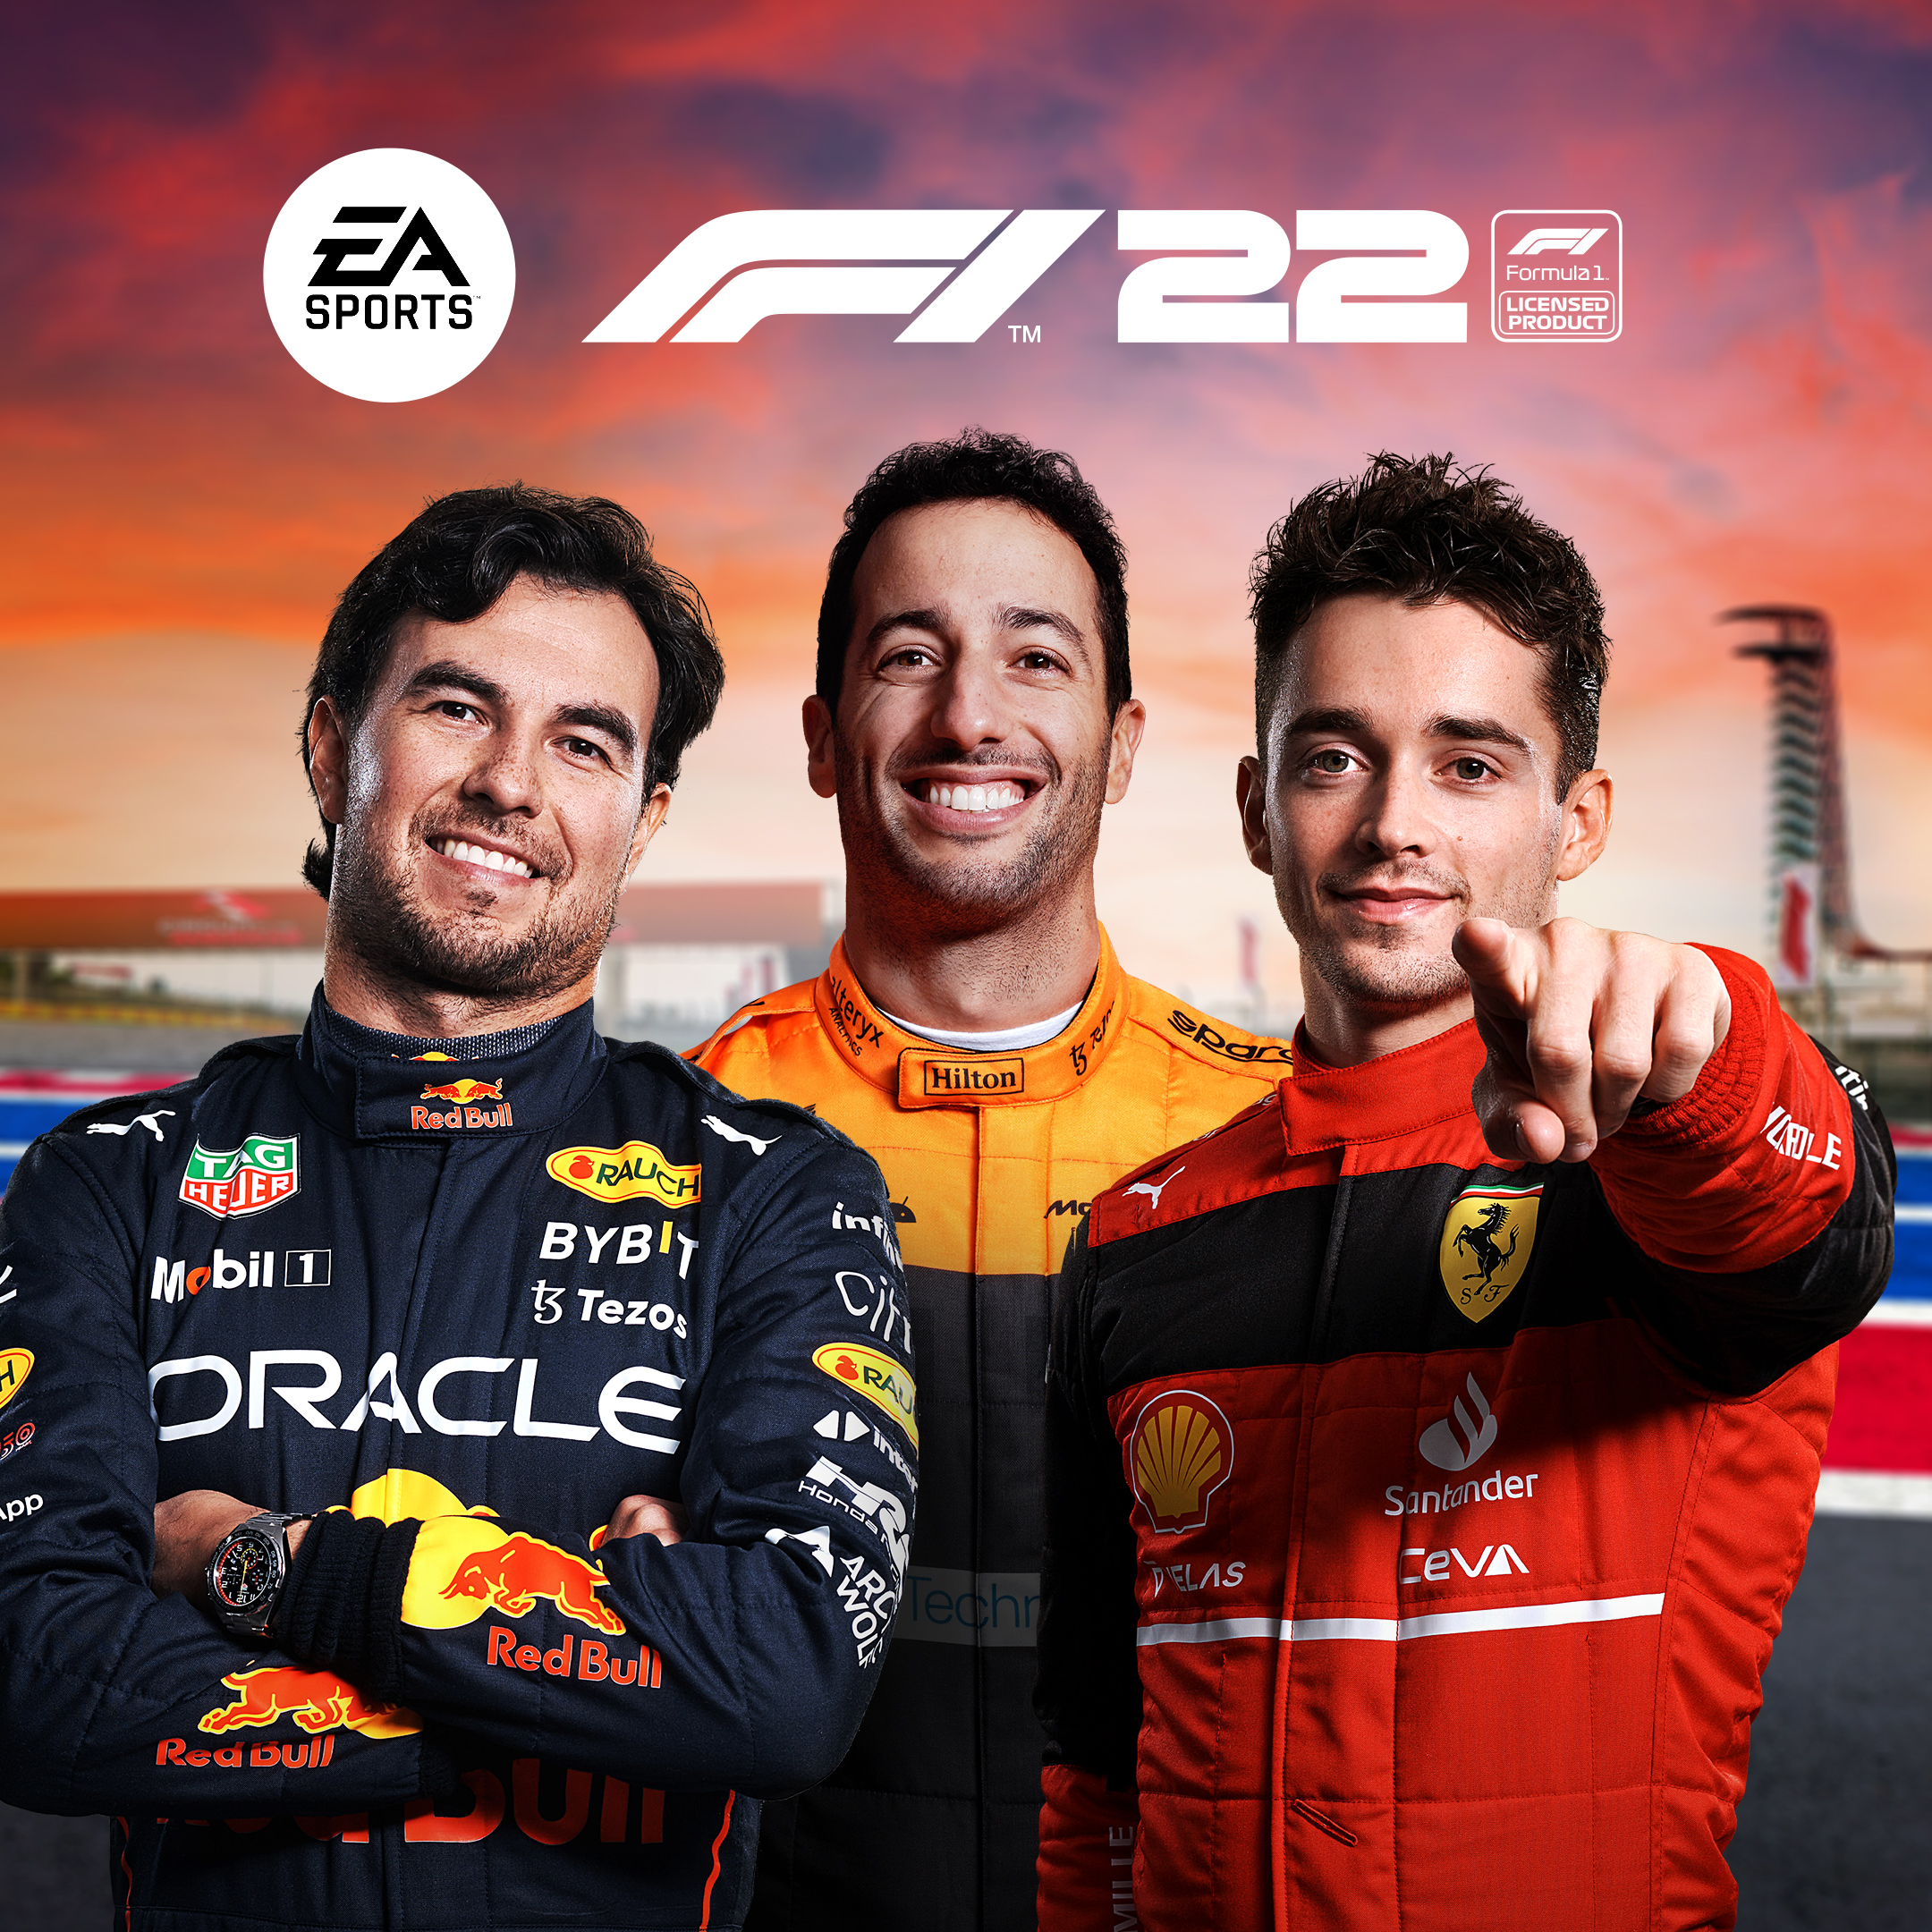 F1 22 fica grátis para jogar em consoles e PC neste final de semana